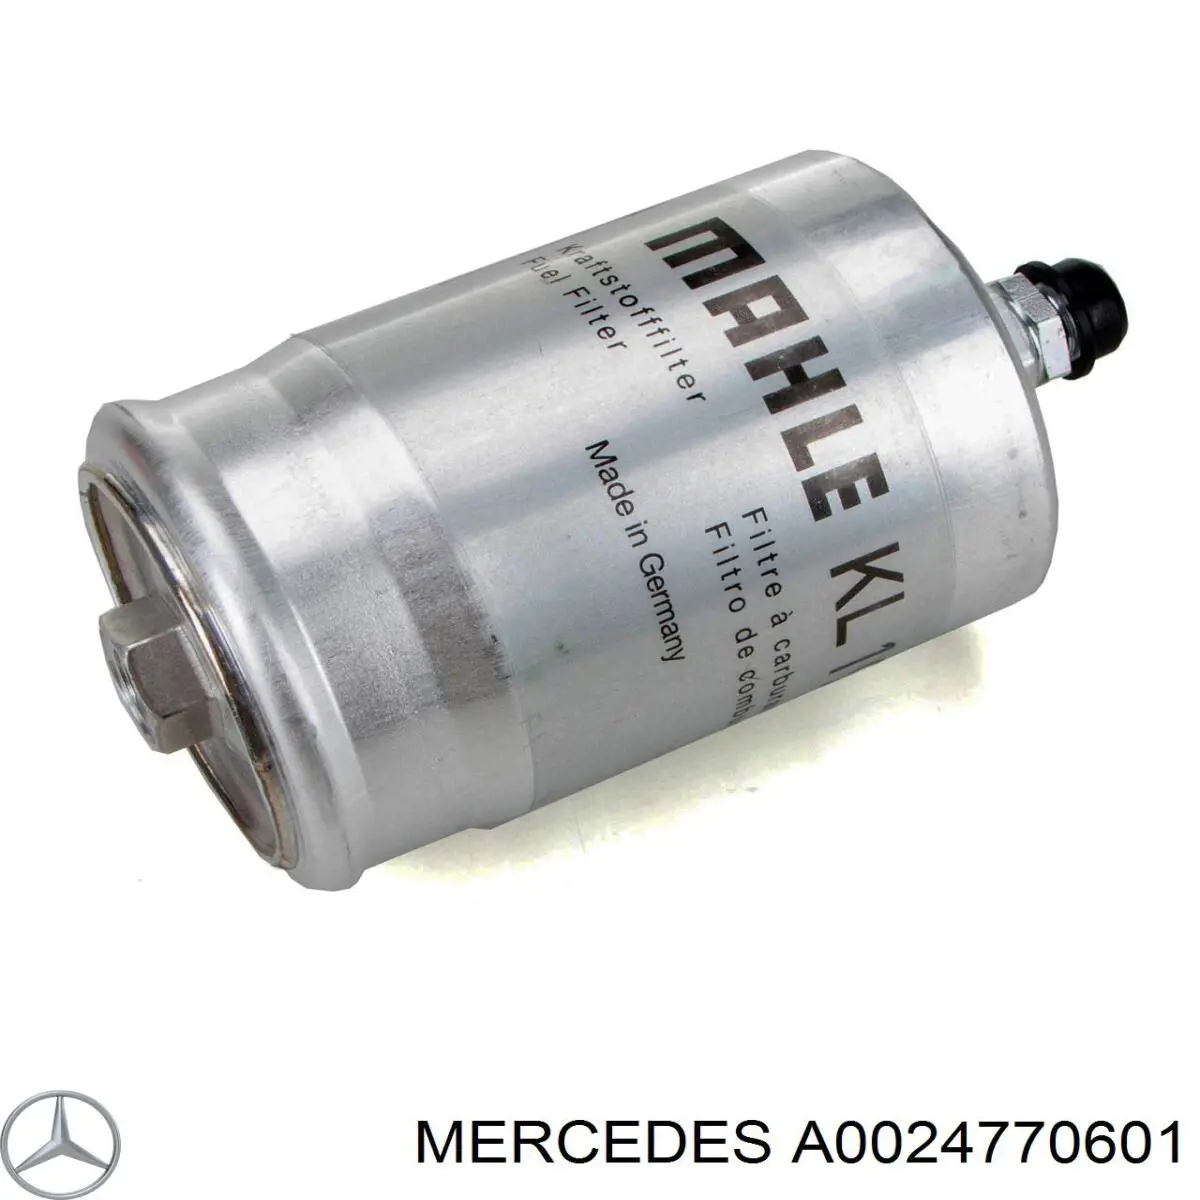 A0024770601 Mercedes filtro combustible